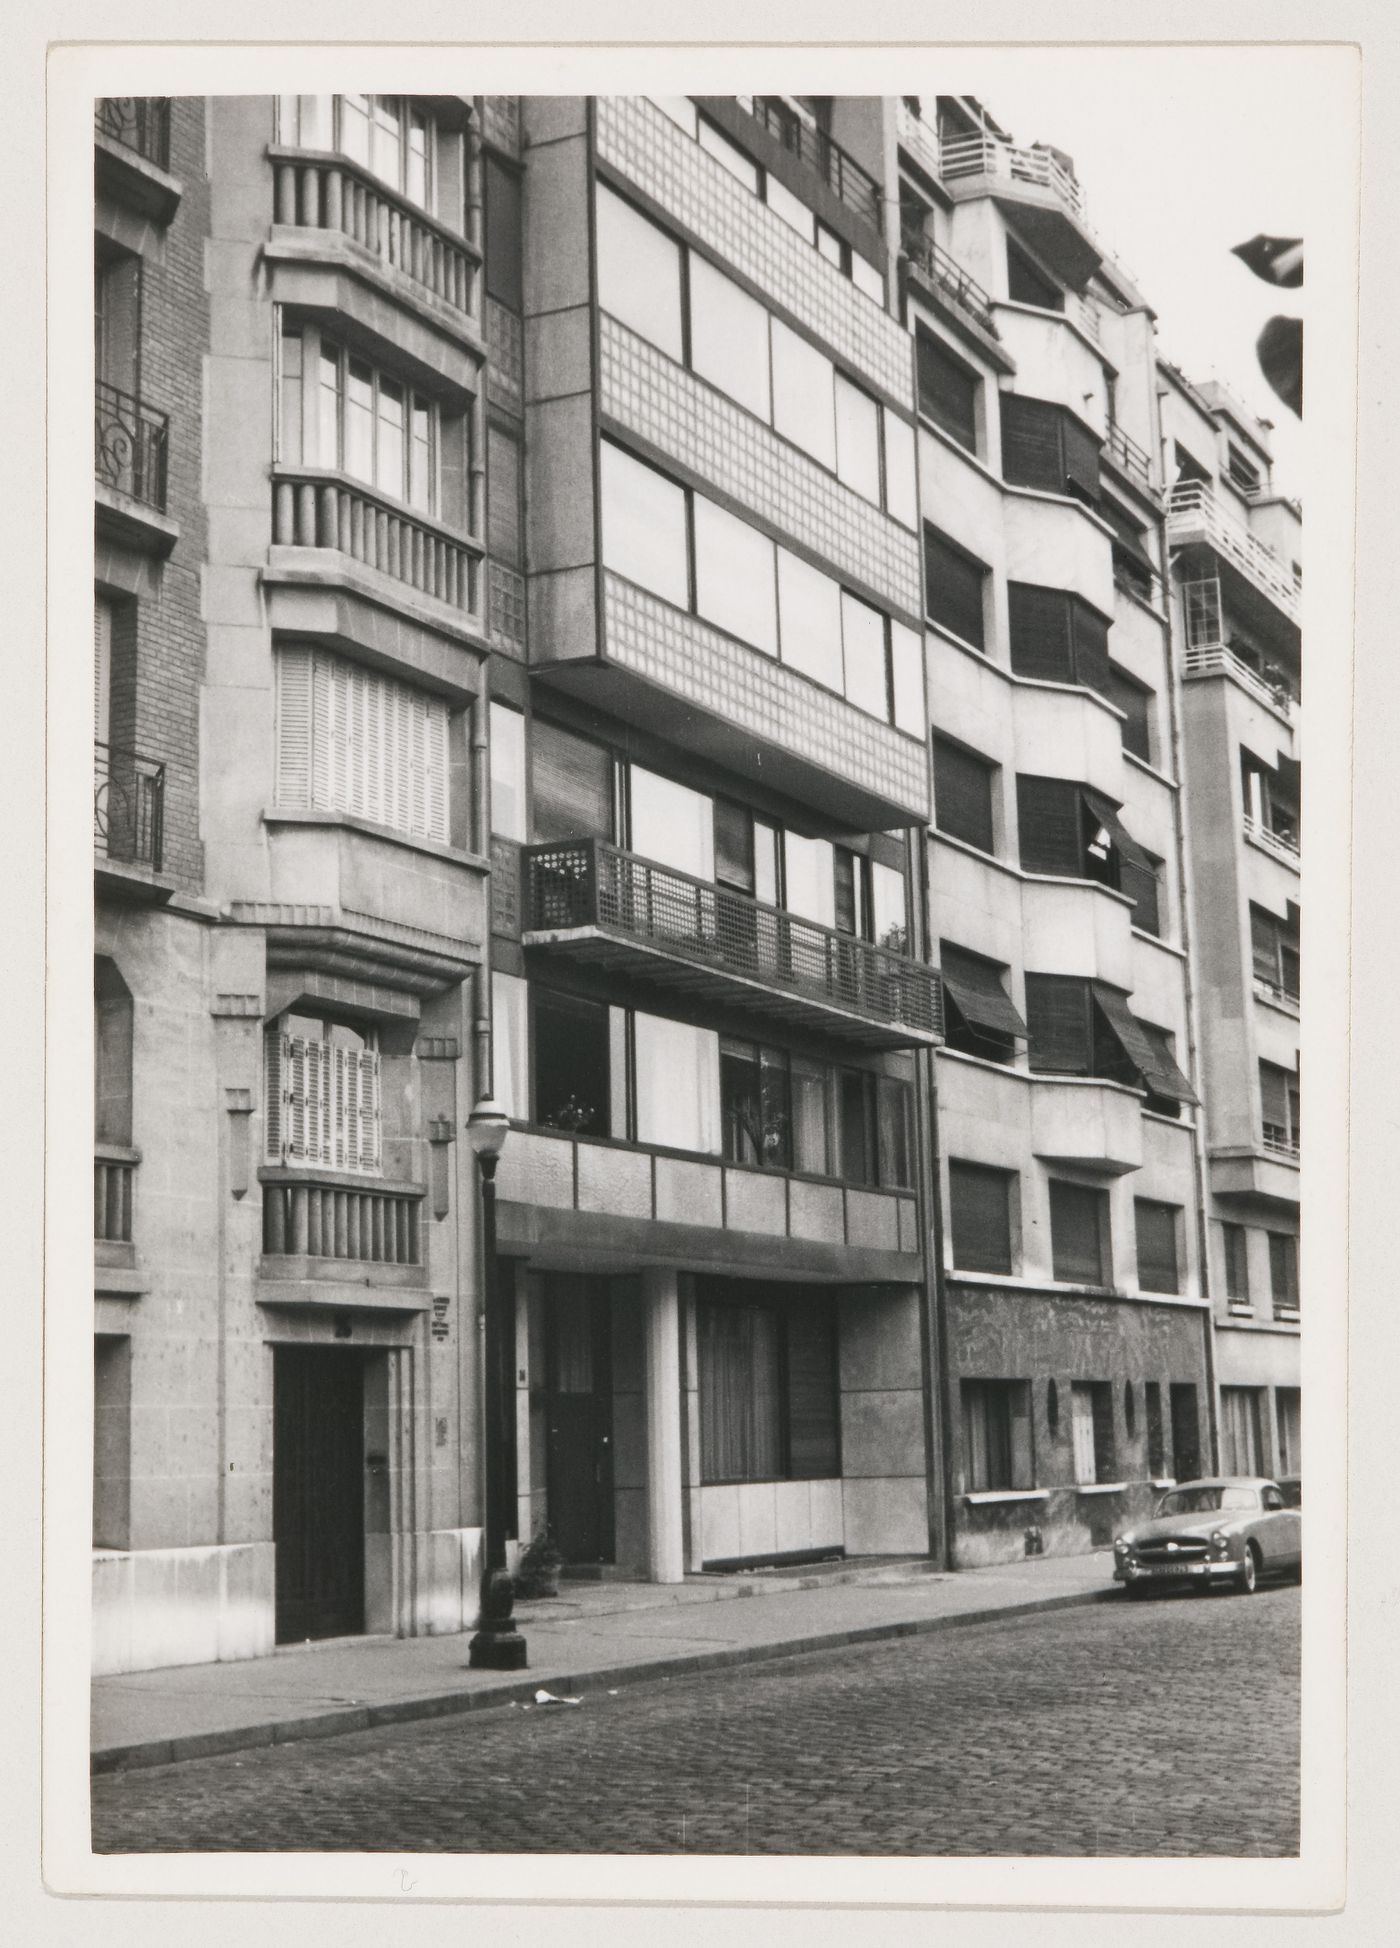 View of 24 rue Nungesser et Coli, Paris, France (Le Corbusier's apartment)